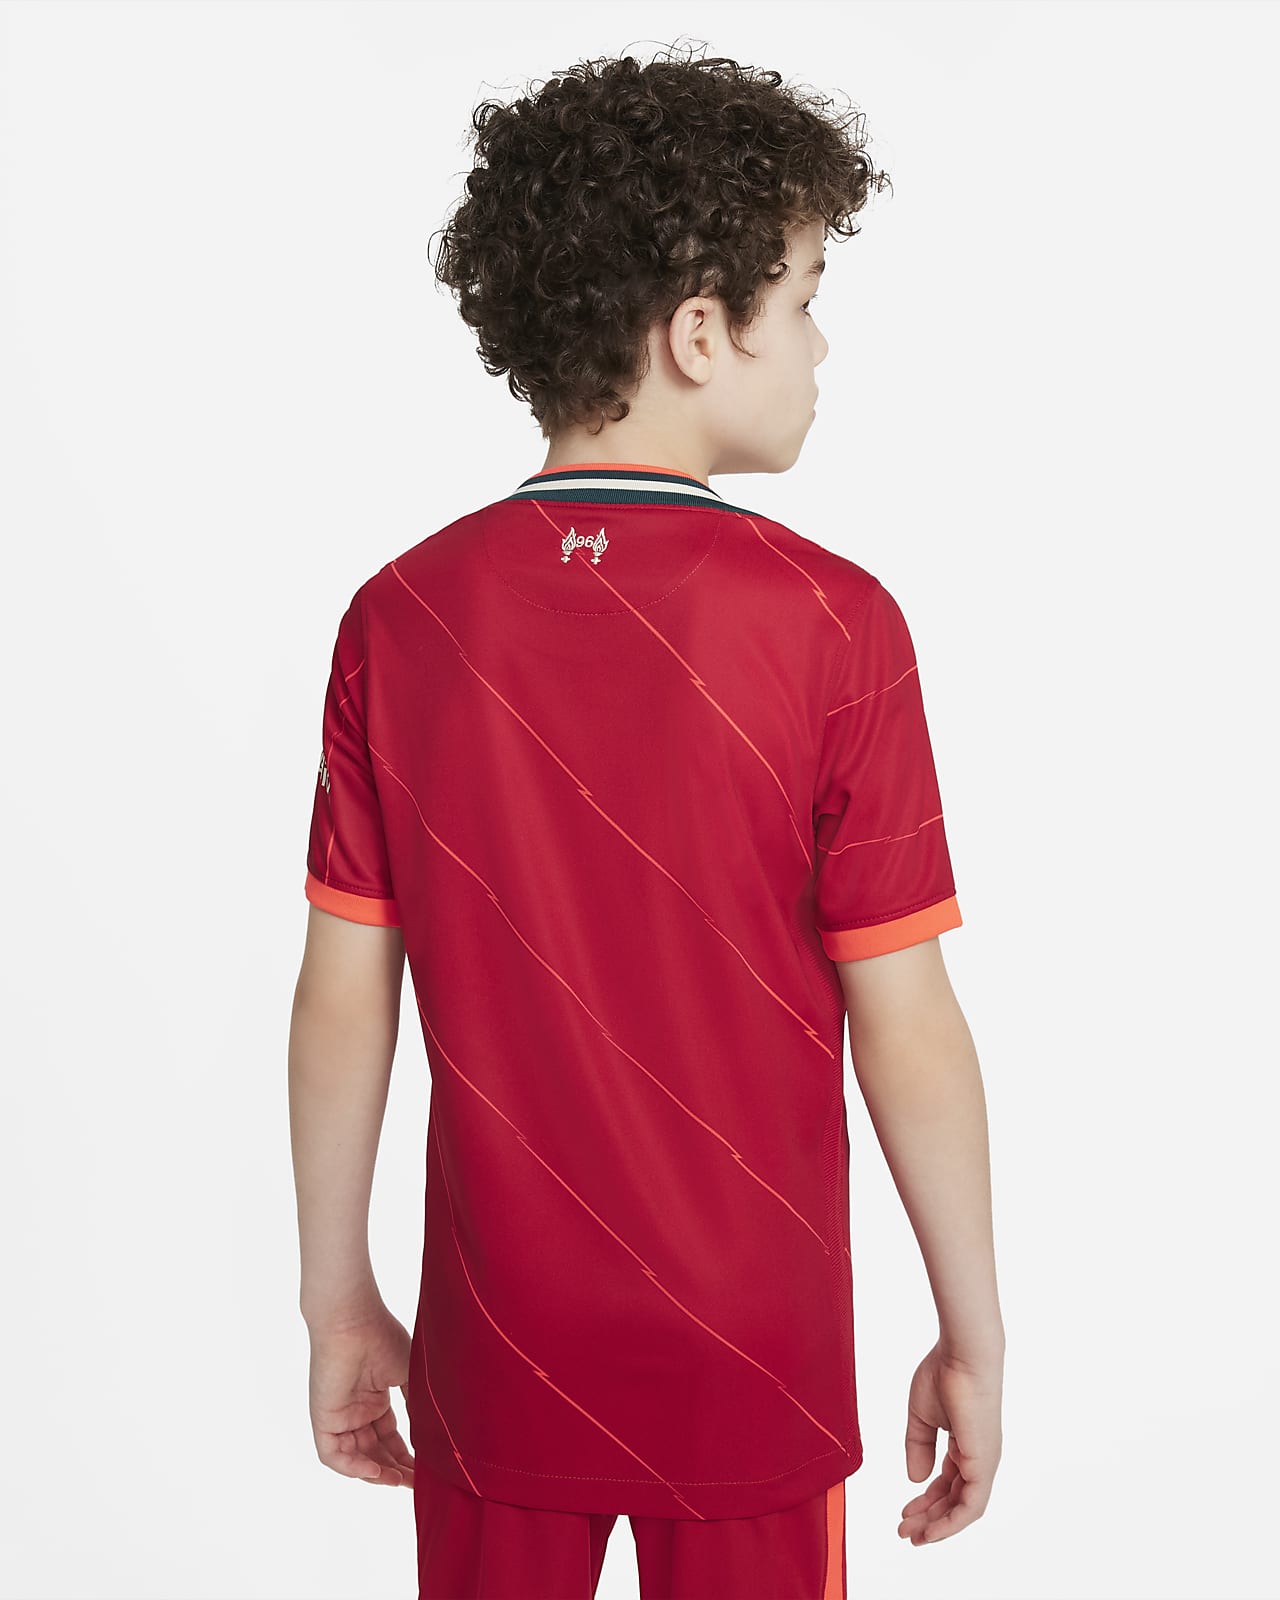 Men's Football Club Shorts Pyjamas Older Boys Man Utd Liverpool Red Short Sleeve